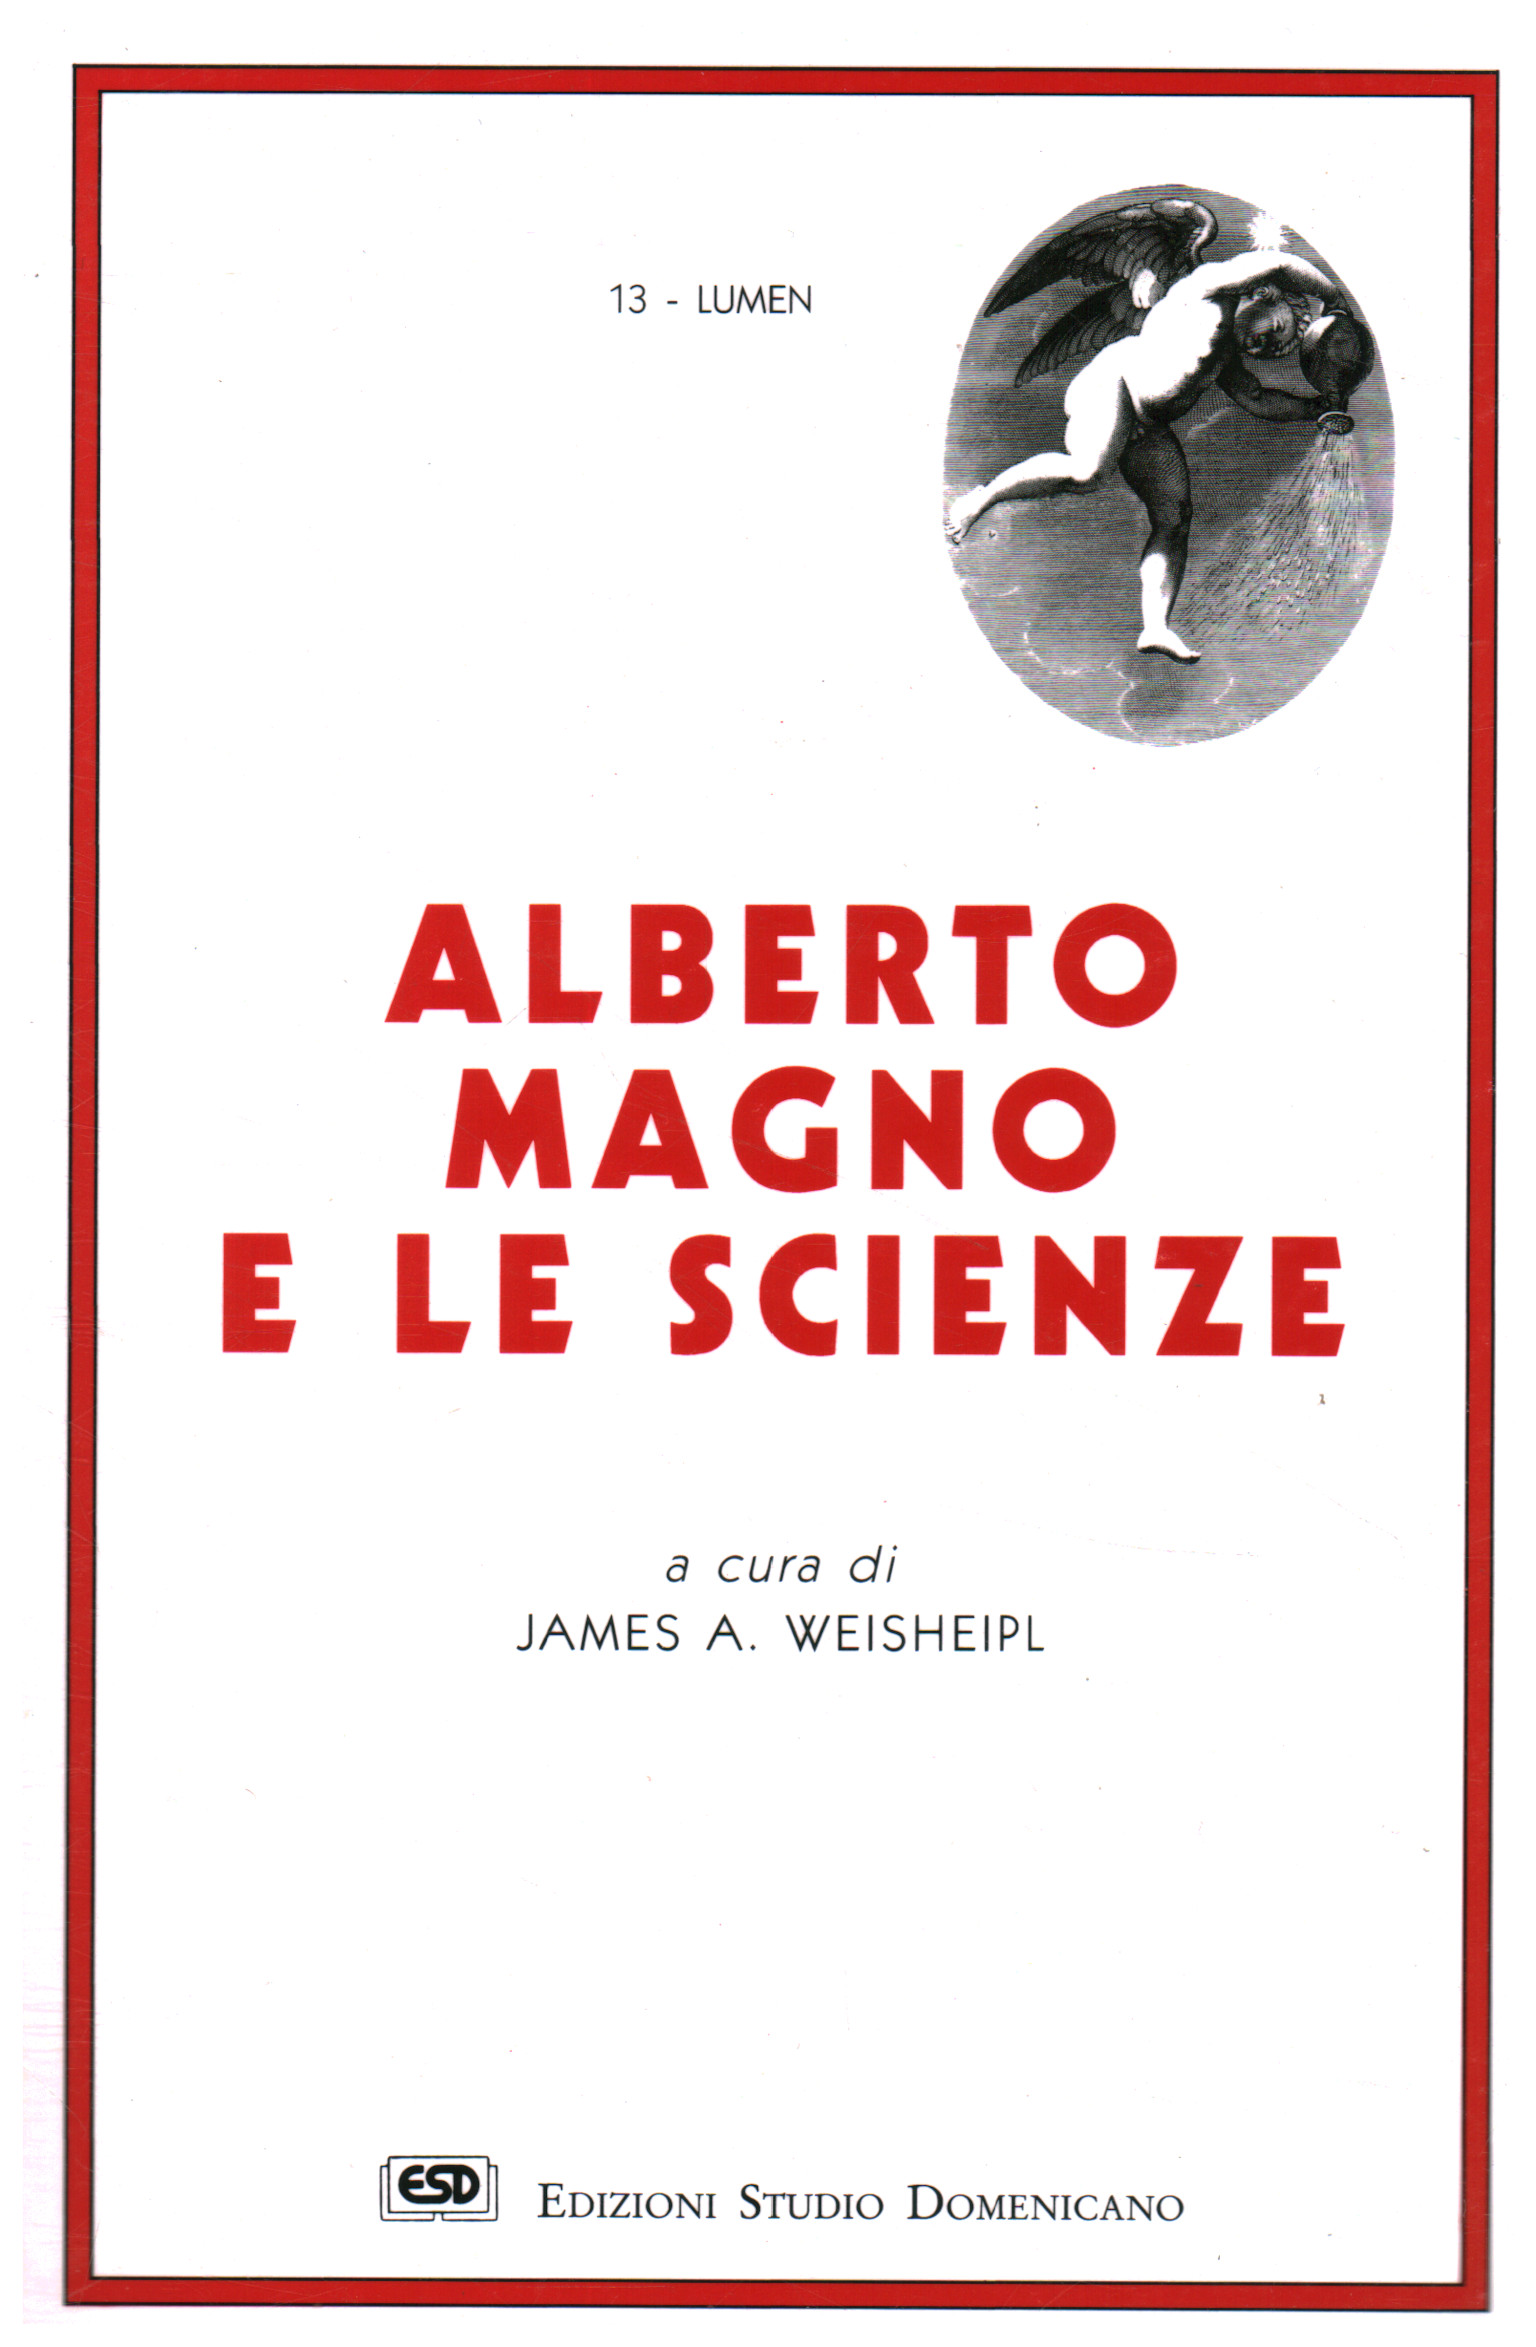 Alberto Magno e le scienze